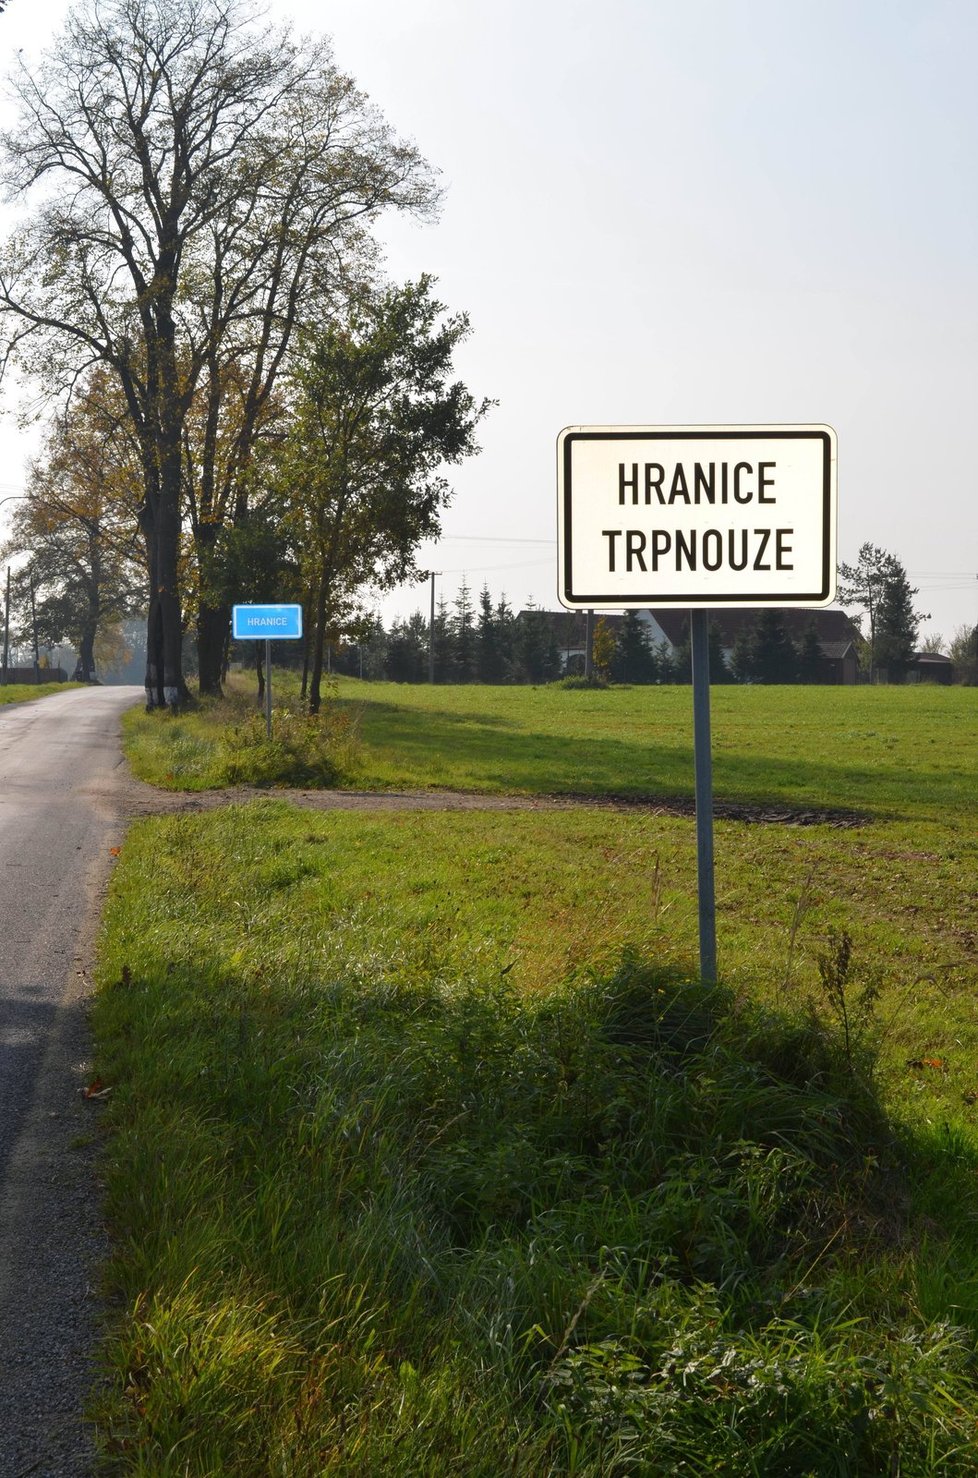 Vpravo začátek obce Hranice, která se táhne 4 kilometry. Vpravo přes silnici obec Trpnouze.